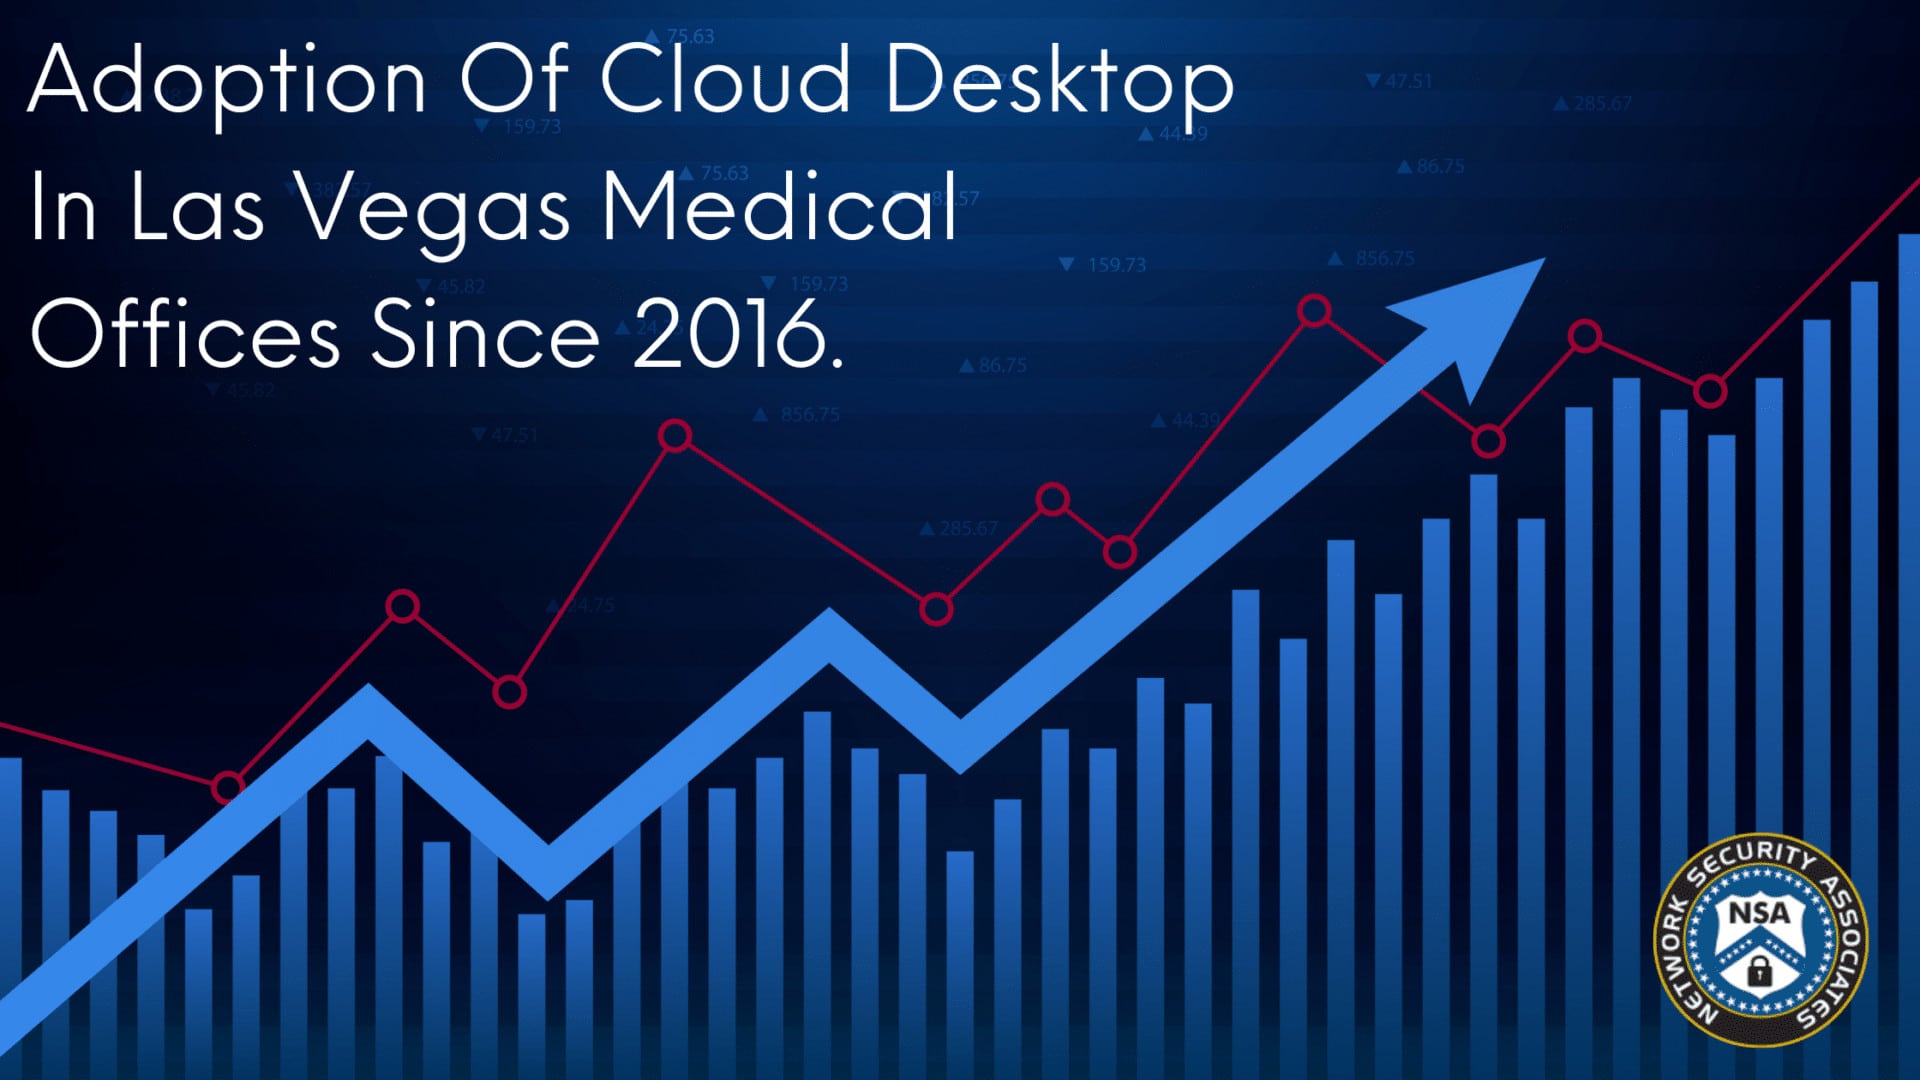 Cloud Desktop Adoption Las Vegas Medical Offices Since 2016